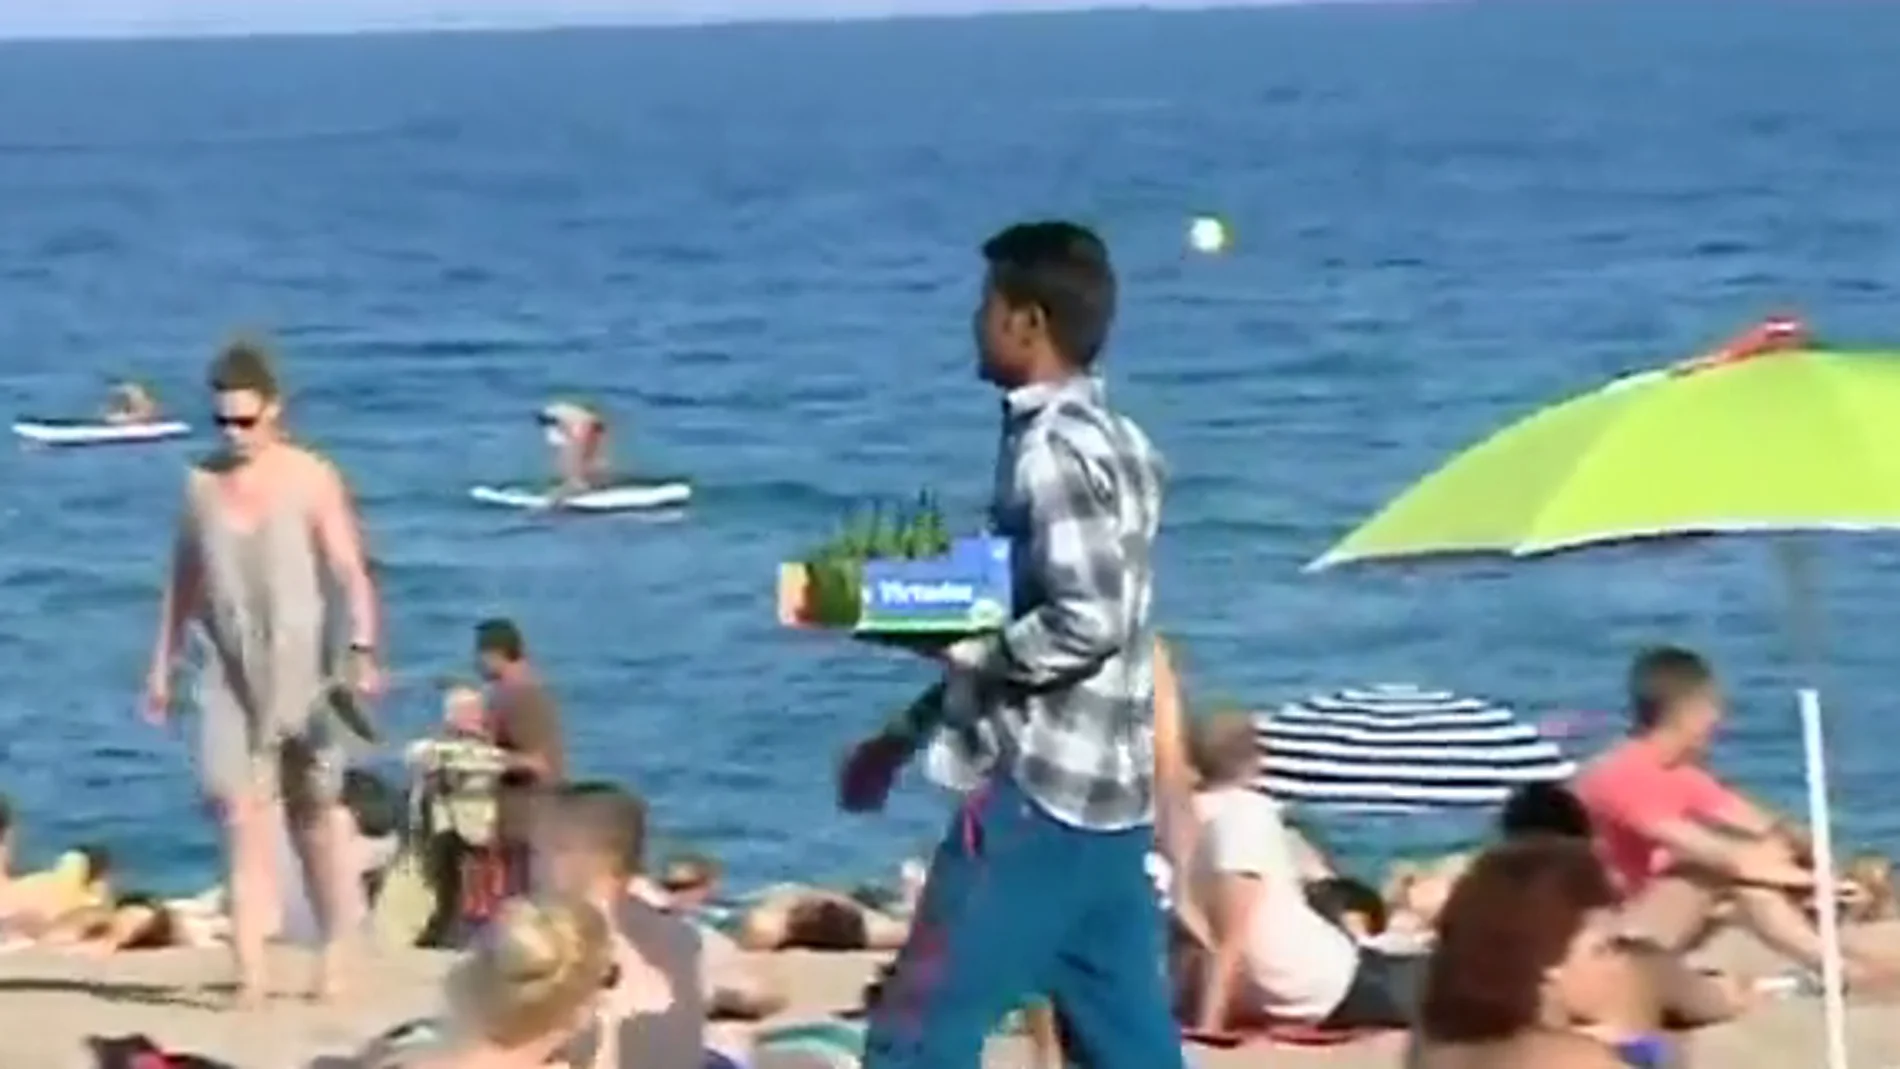 Detienen a tres personas por vender mojitos con bacterias fecales en playas de Barcelona